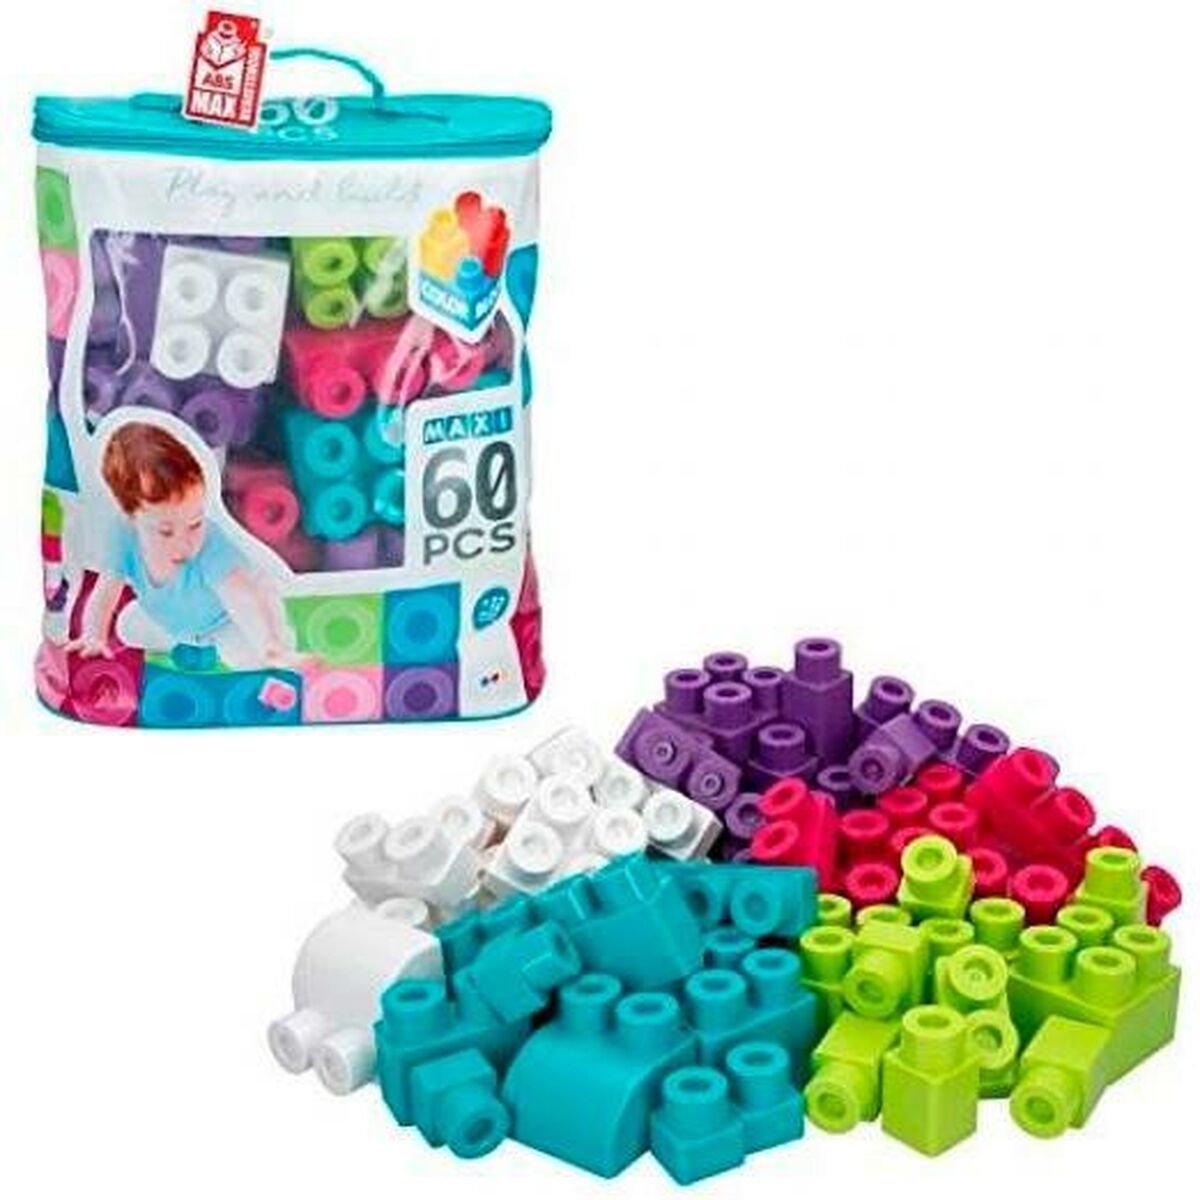 Blocchi di Costruzioni Colorbaby Play & Build 60 Pezzi Multicolore